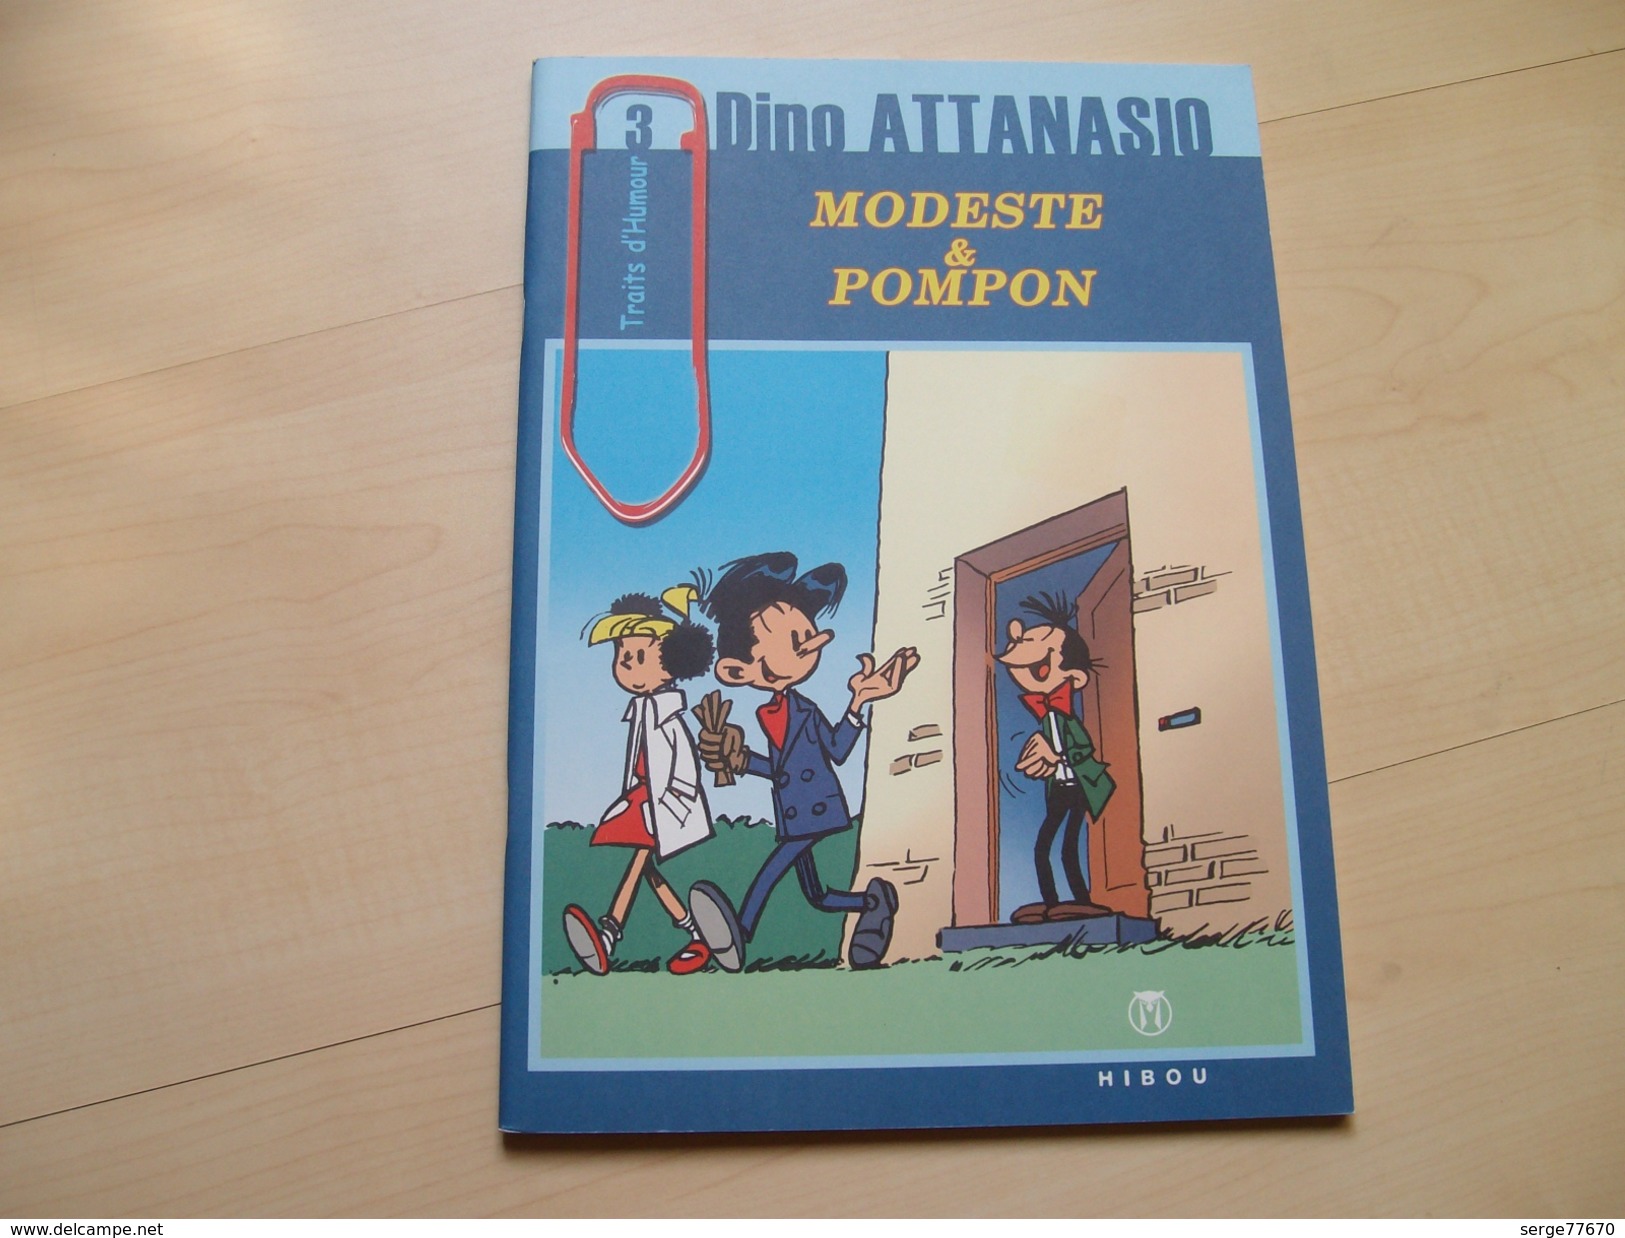 Modeste Et Pompon Attanasio Limité édition Originale Spirou Franquin Tintin Loup Hibou - Modeste Et Pompon